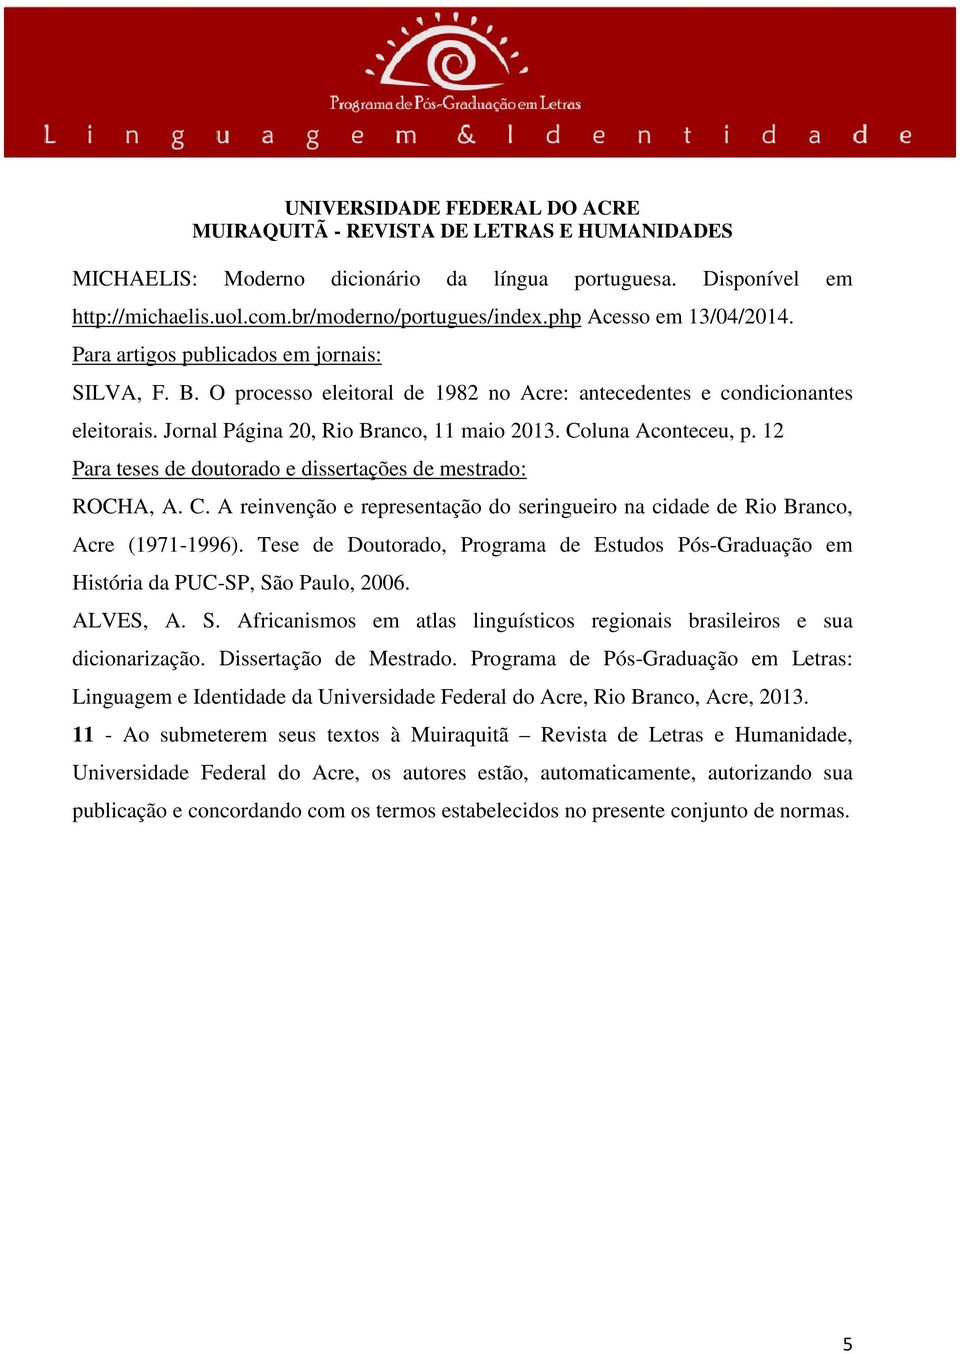 12 Para teses de doutorado e dissertações de mestrado: ROCHA, A. C. A reinvenção e representação do seringueiro na cidade de Rio Branco, Acre (1971-1996).